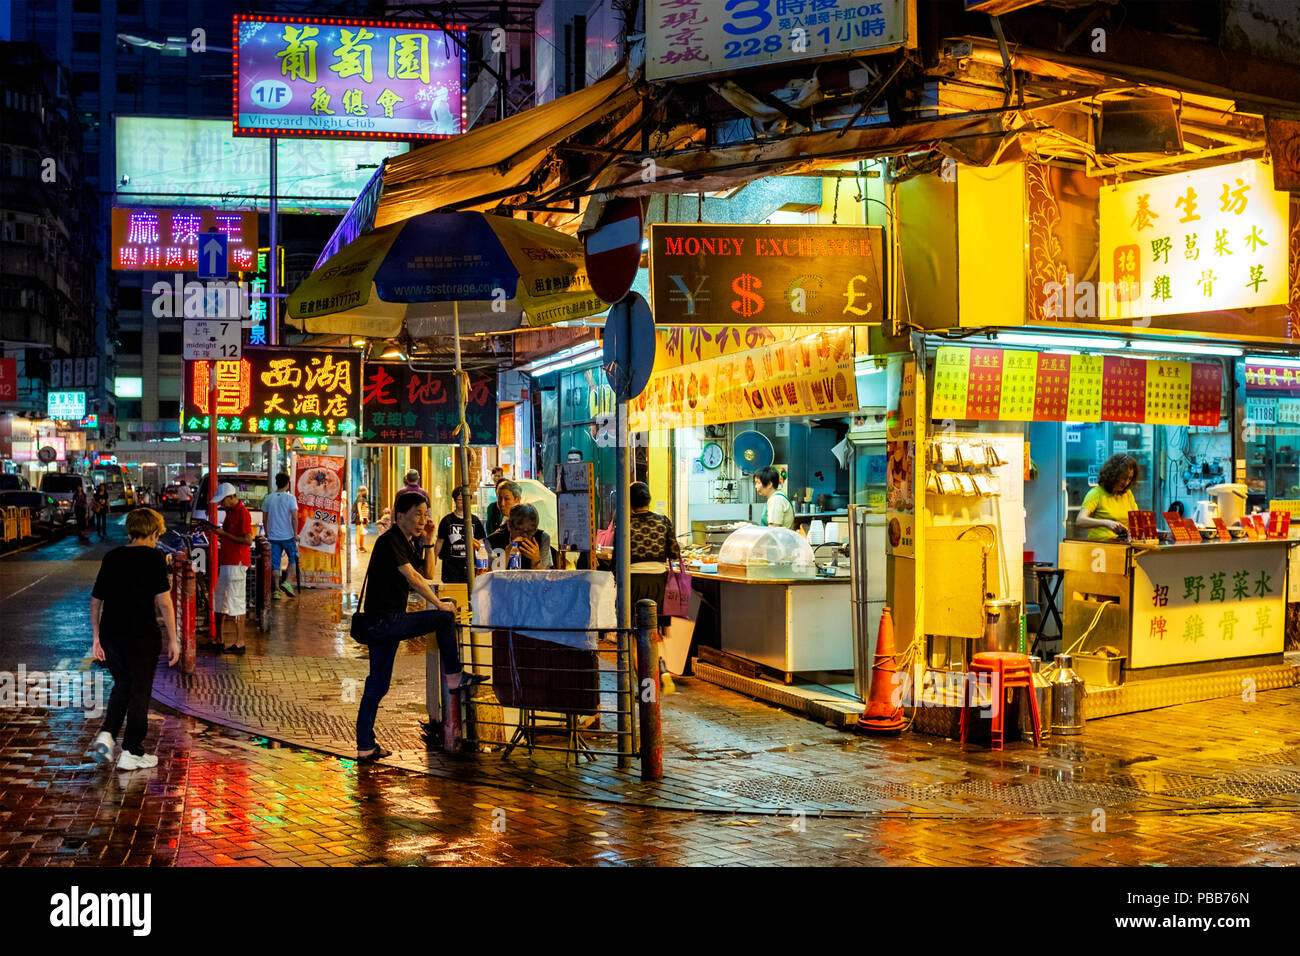 Le marché de nuit de Temple Street, Kowloon, Hong Kong, Chine Banque D'Images